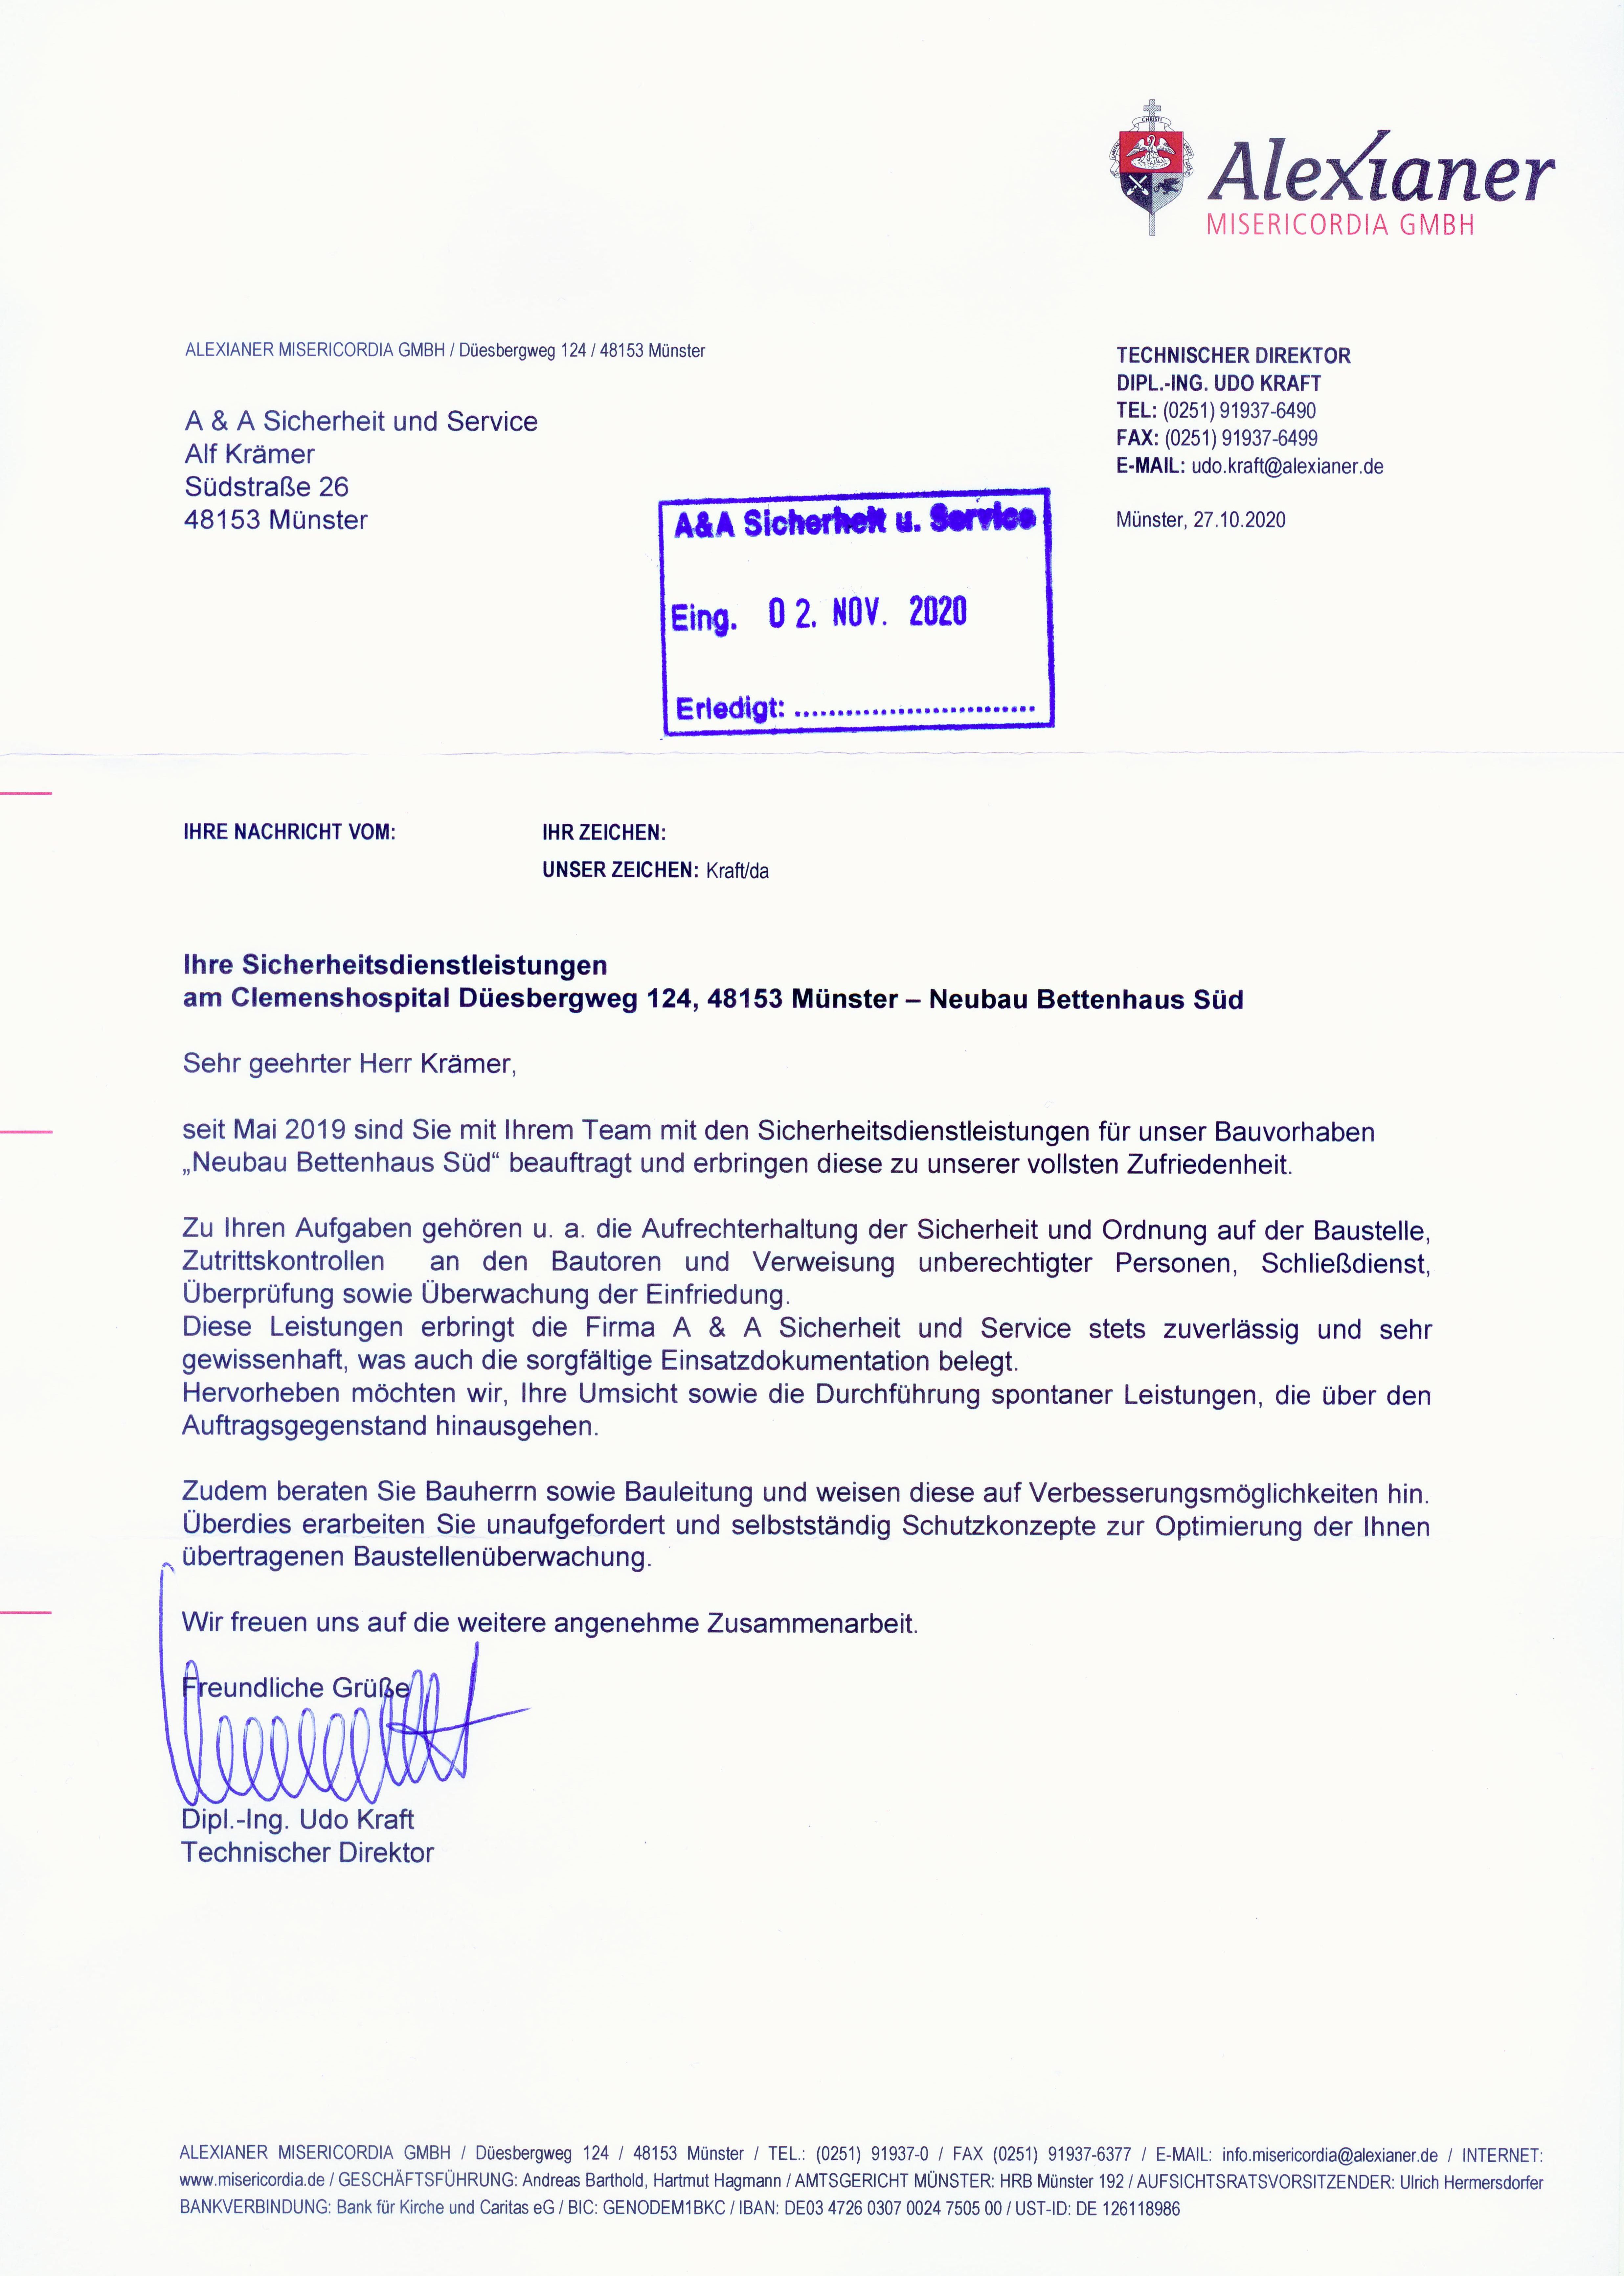 REFERENZ-Schreiben Baustellenbewachung Clemenshospital Münster Alexianer 27.10.2020 @ A&A Sicherheit und Service ®